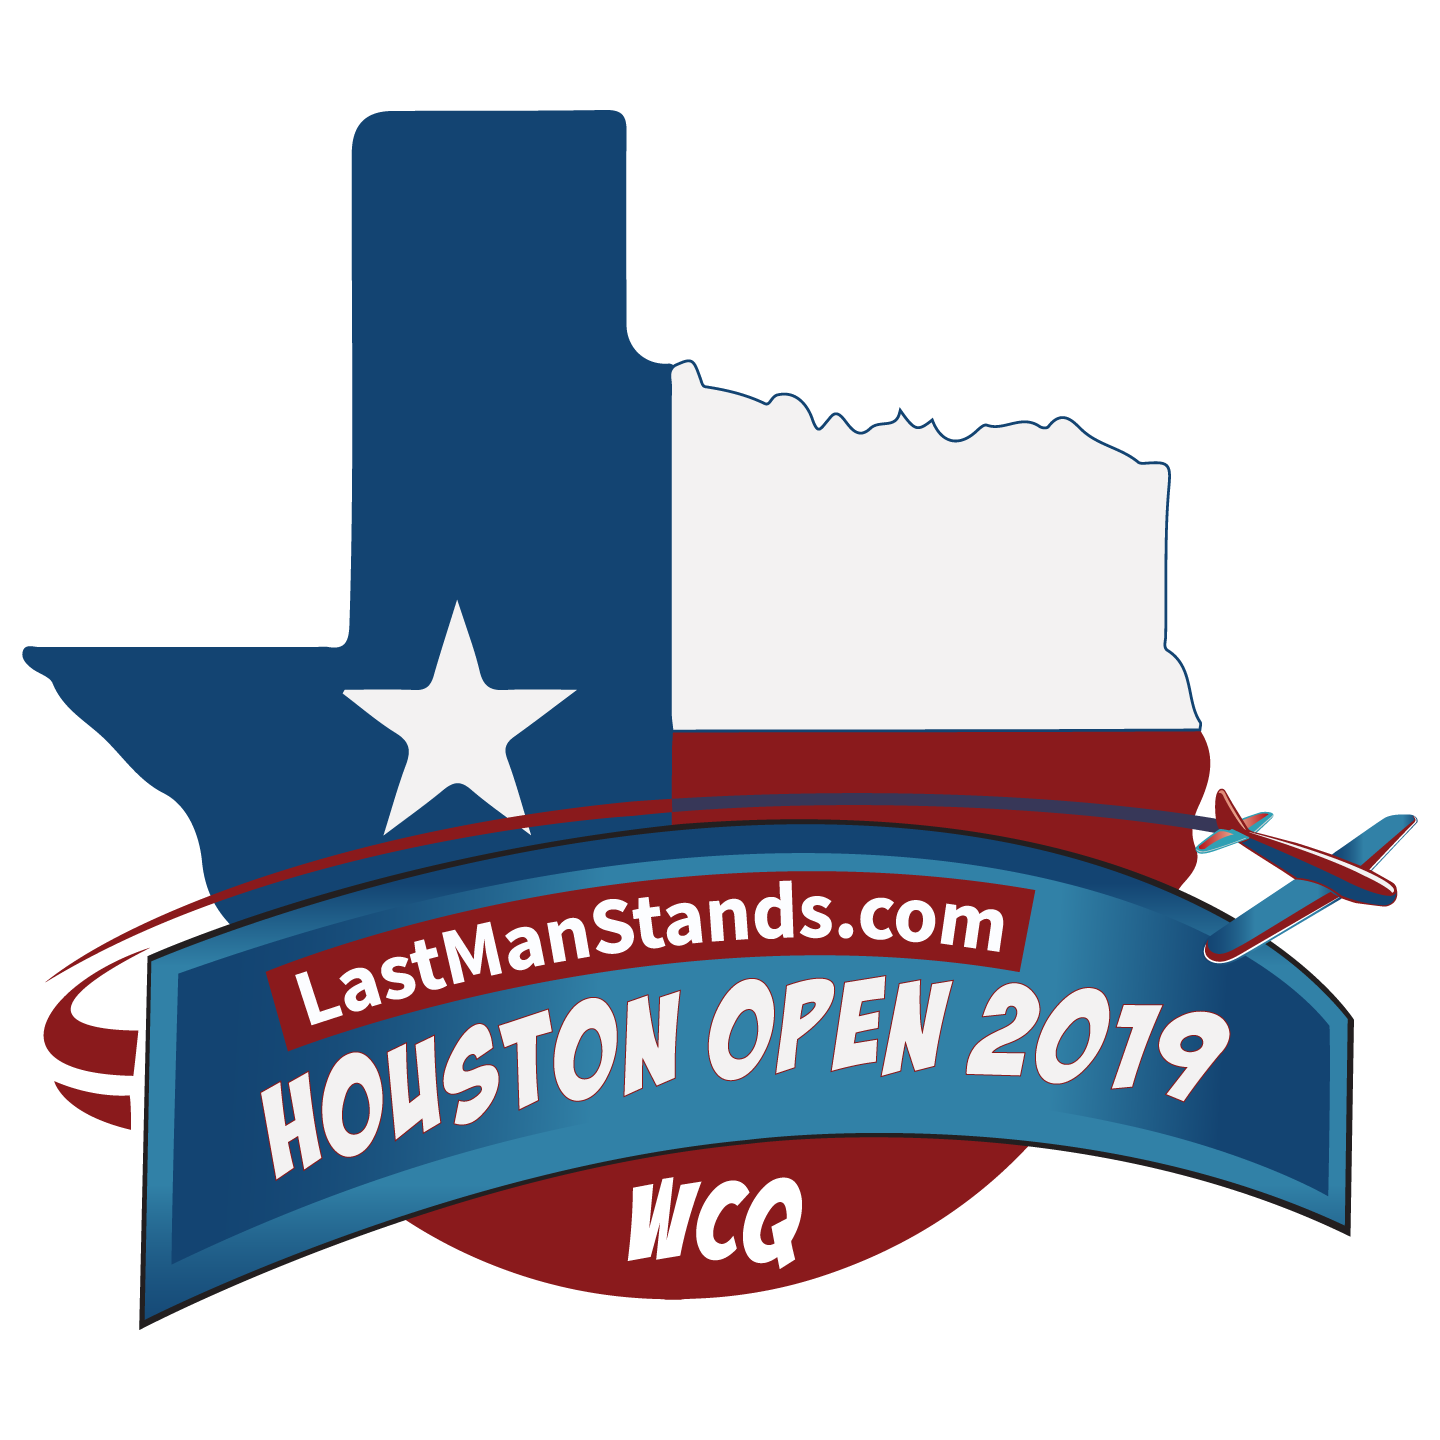 Houston Open Play Cricket!